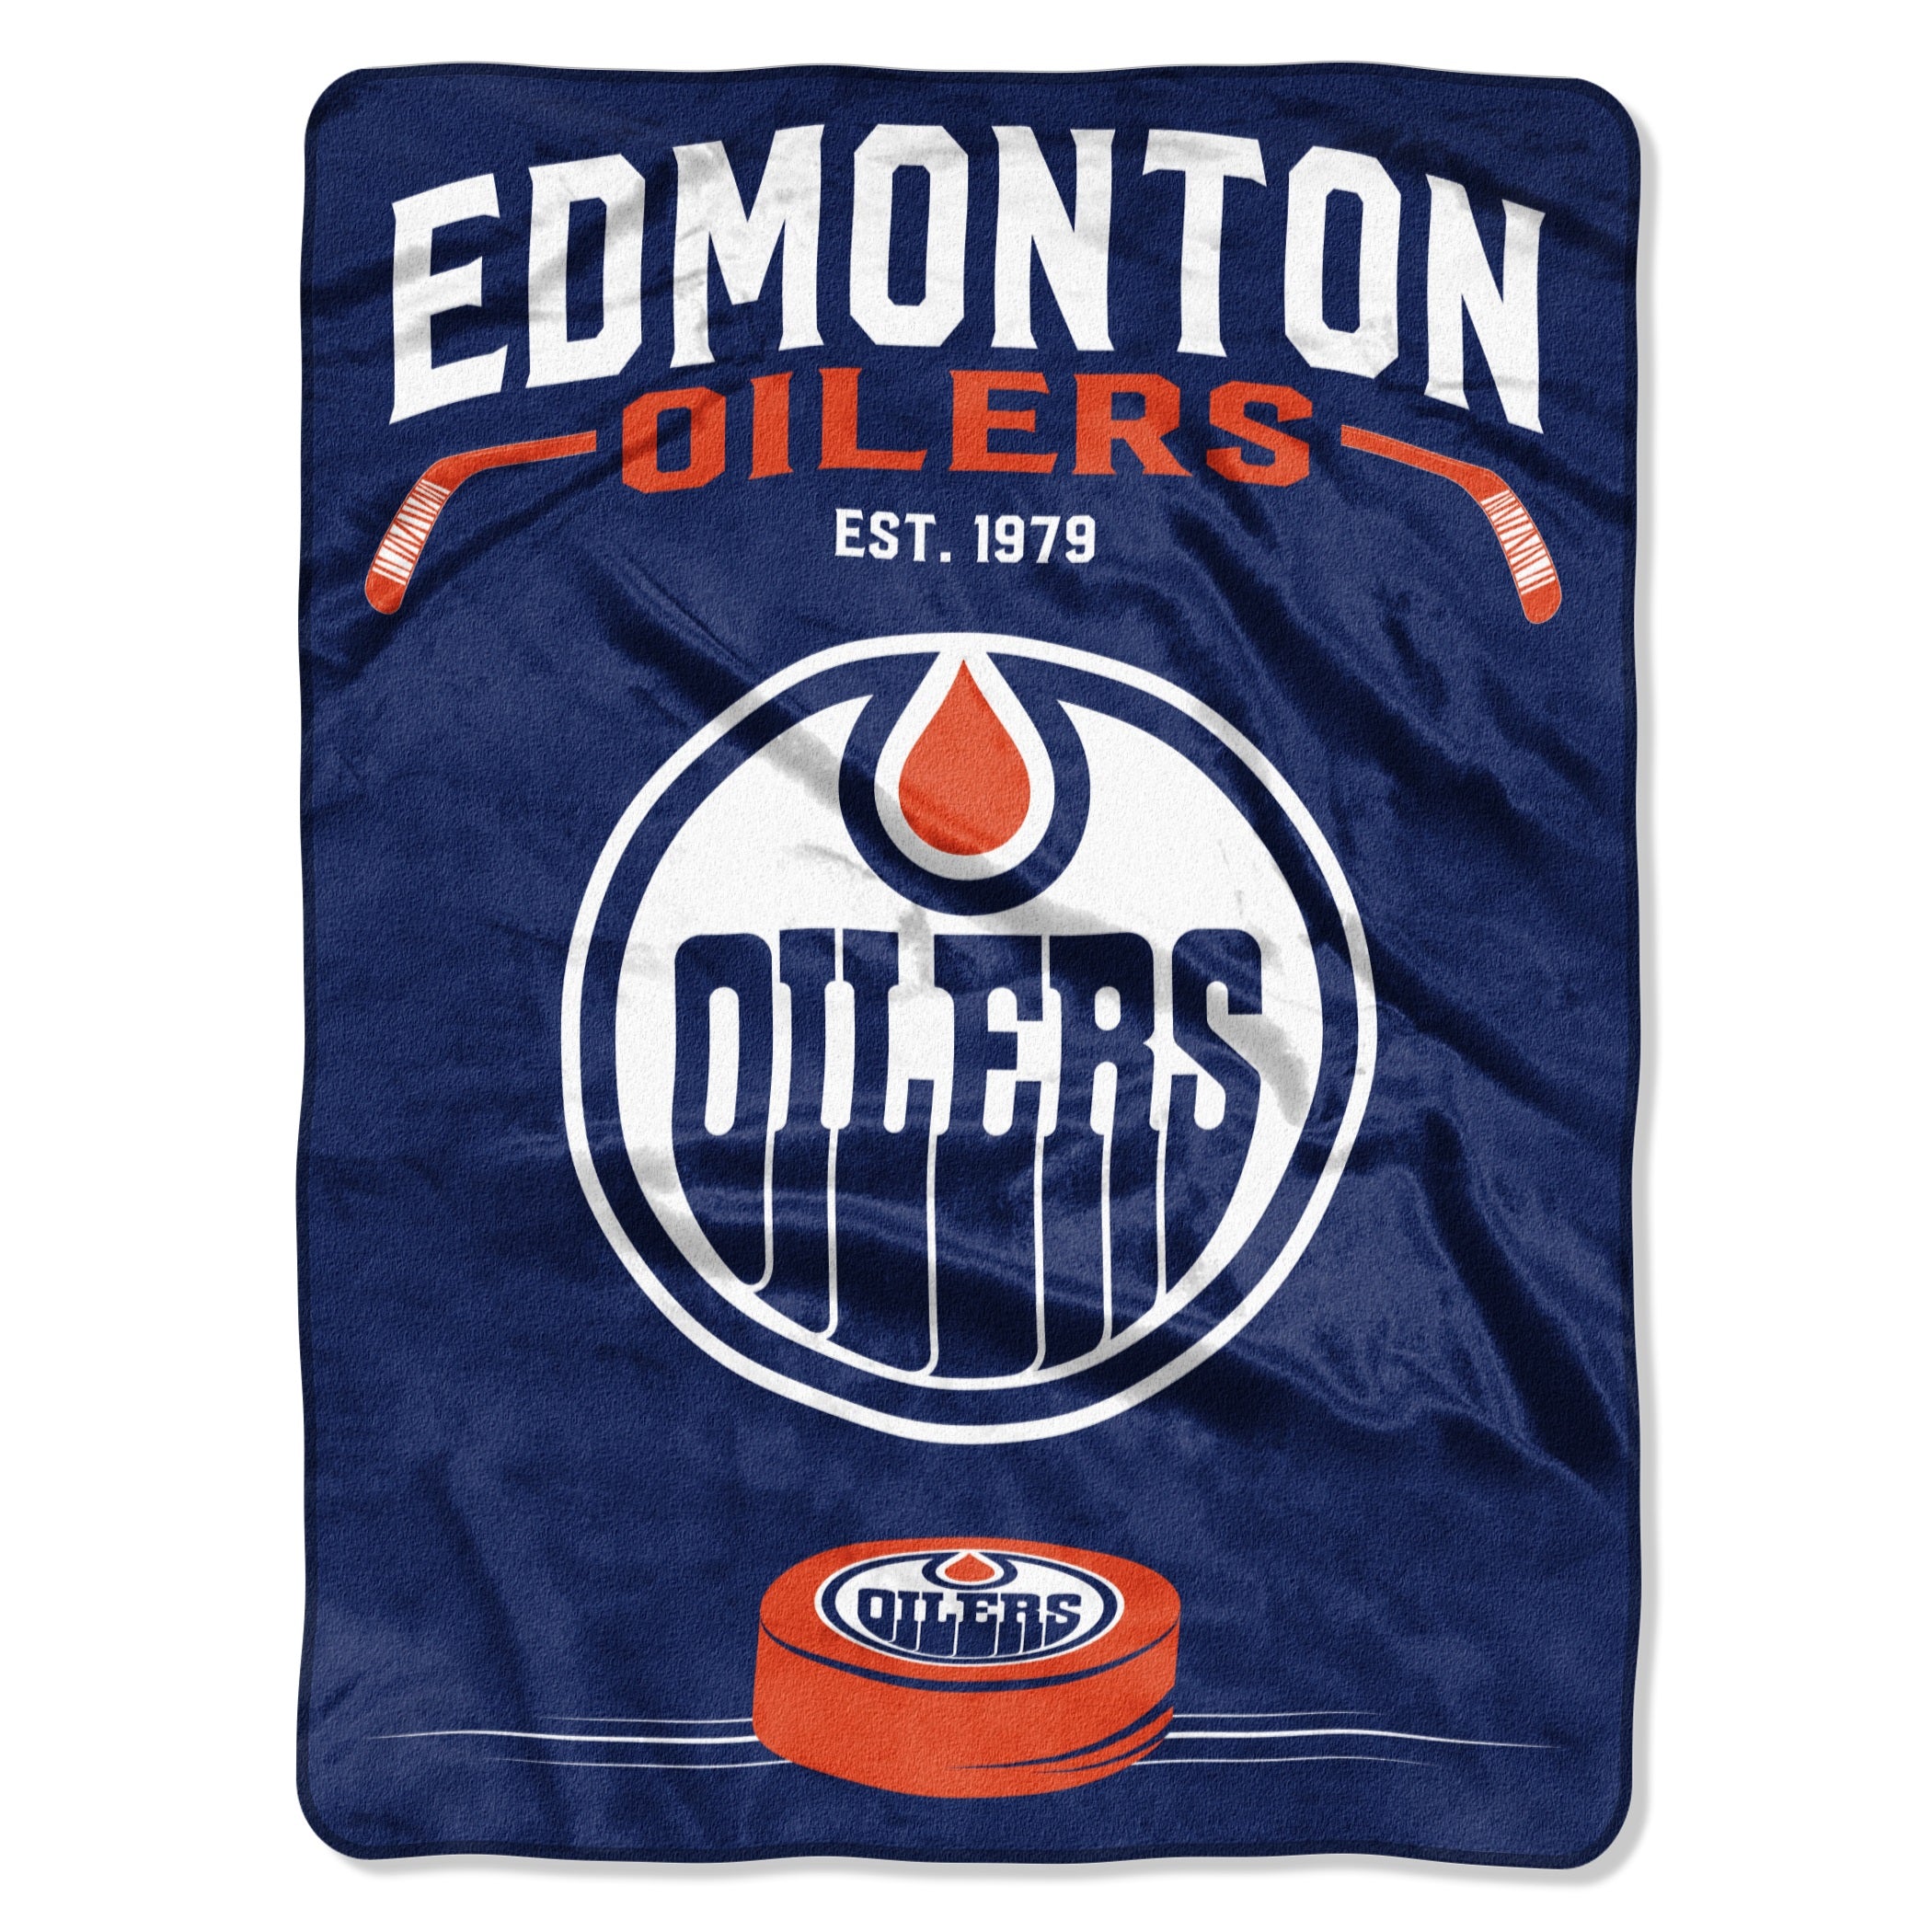 Edmonton Oilers Blanket 60x80 Raschel Inspired Design - Special Order